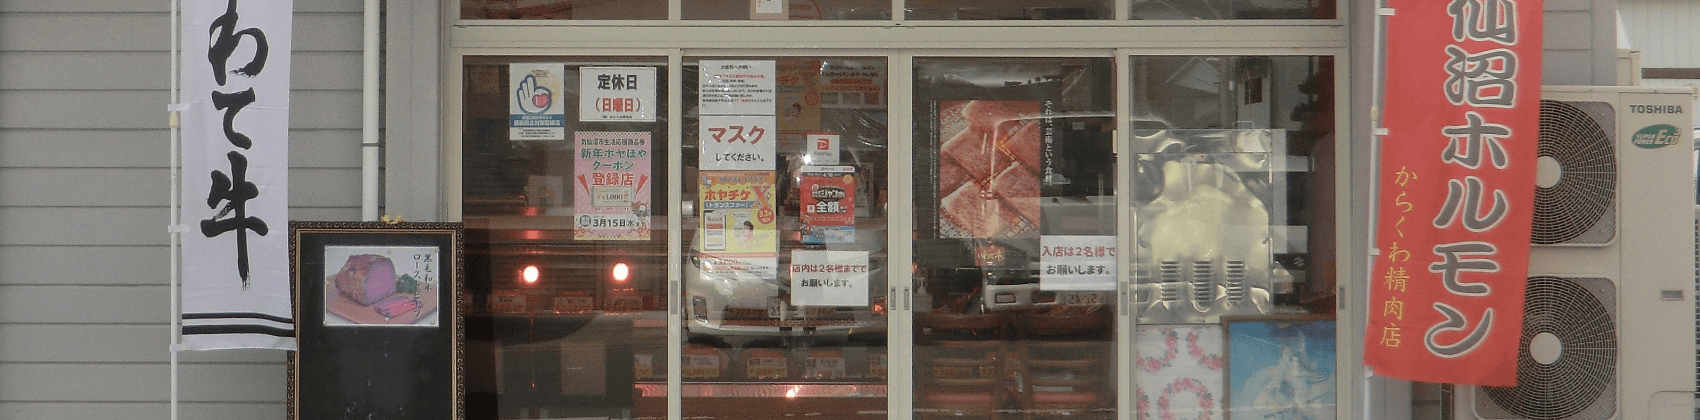 店舗外観の画像